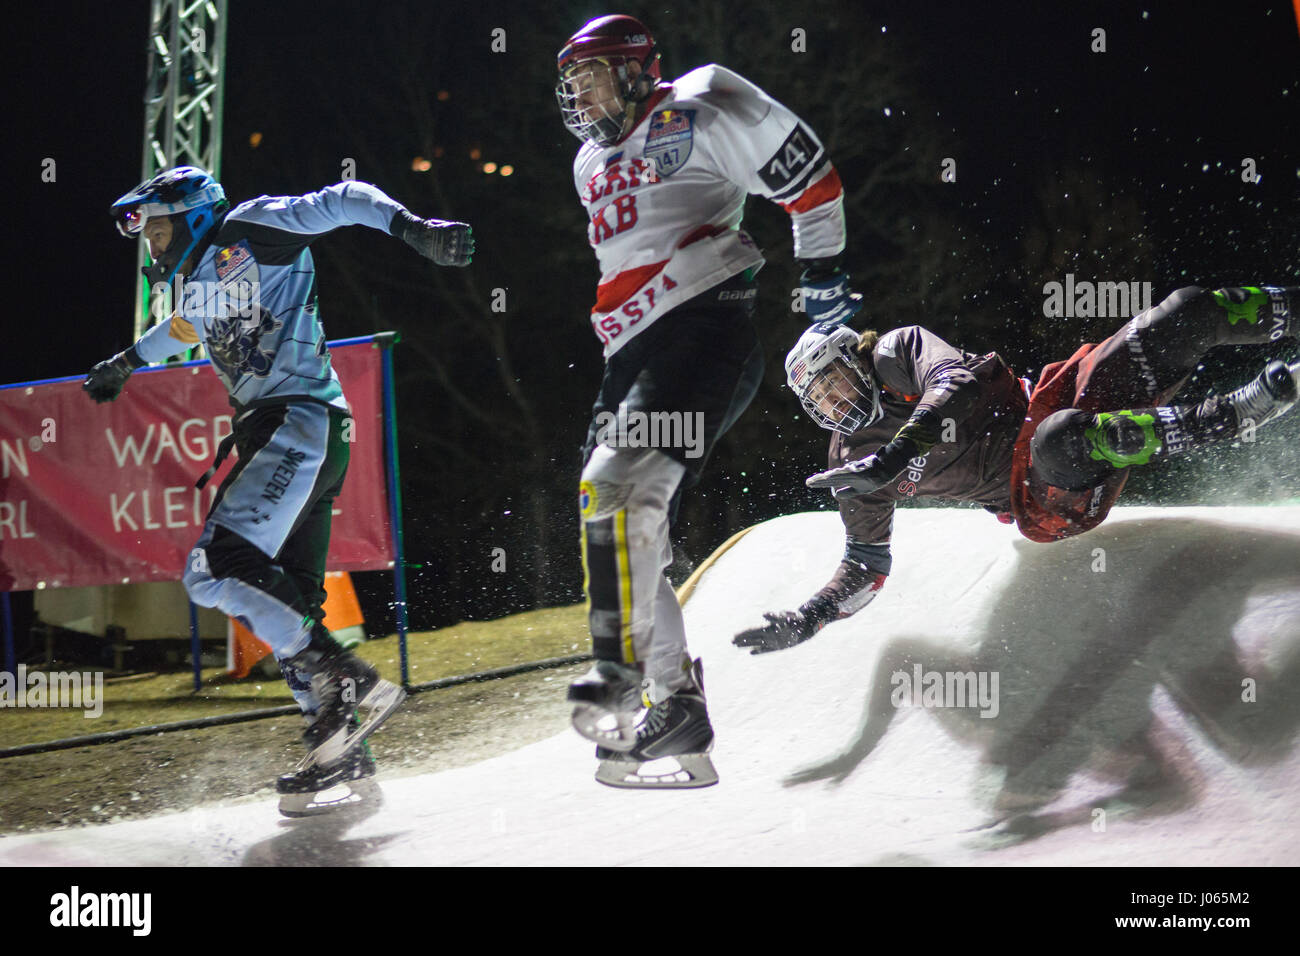 Furchtlos Konkurrent Rennstrecke das 310 Meter lange Eis hinunter auf einer Skipiste in Österreichs Winter Sport Brutstätte Wagrain. Es ist das zweite Rennen in der Eis-Cr Stockfoto